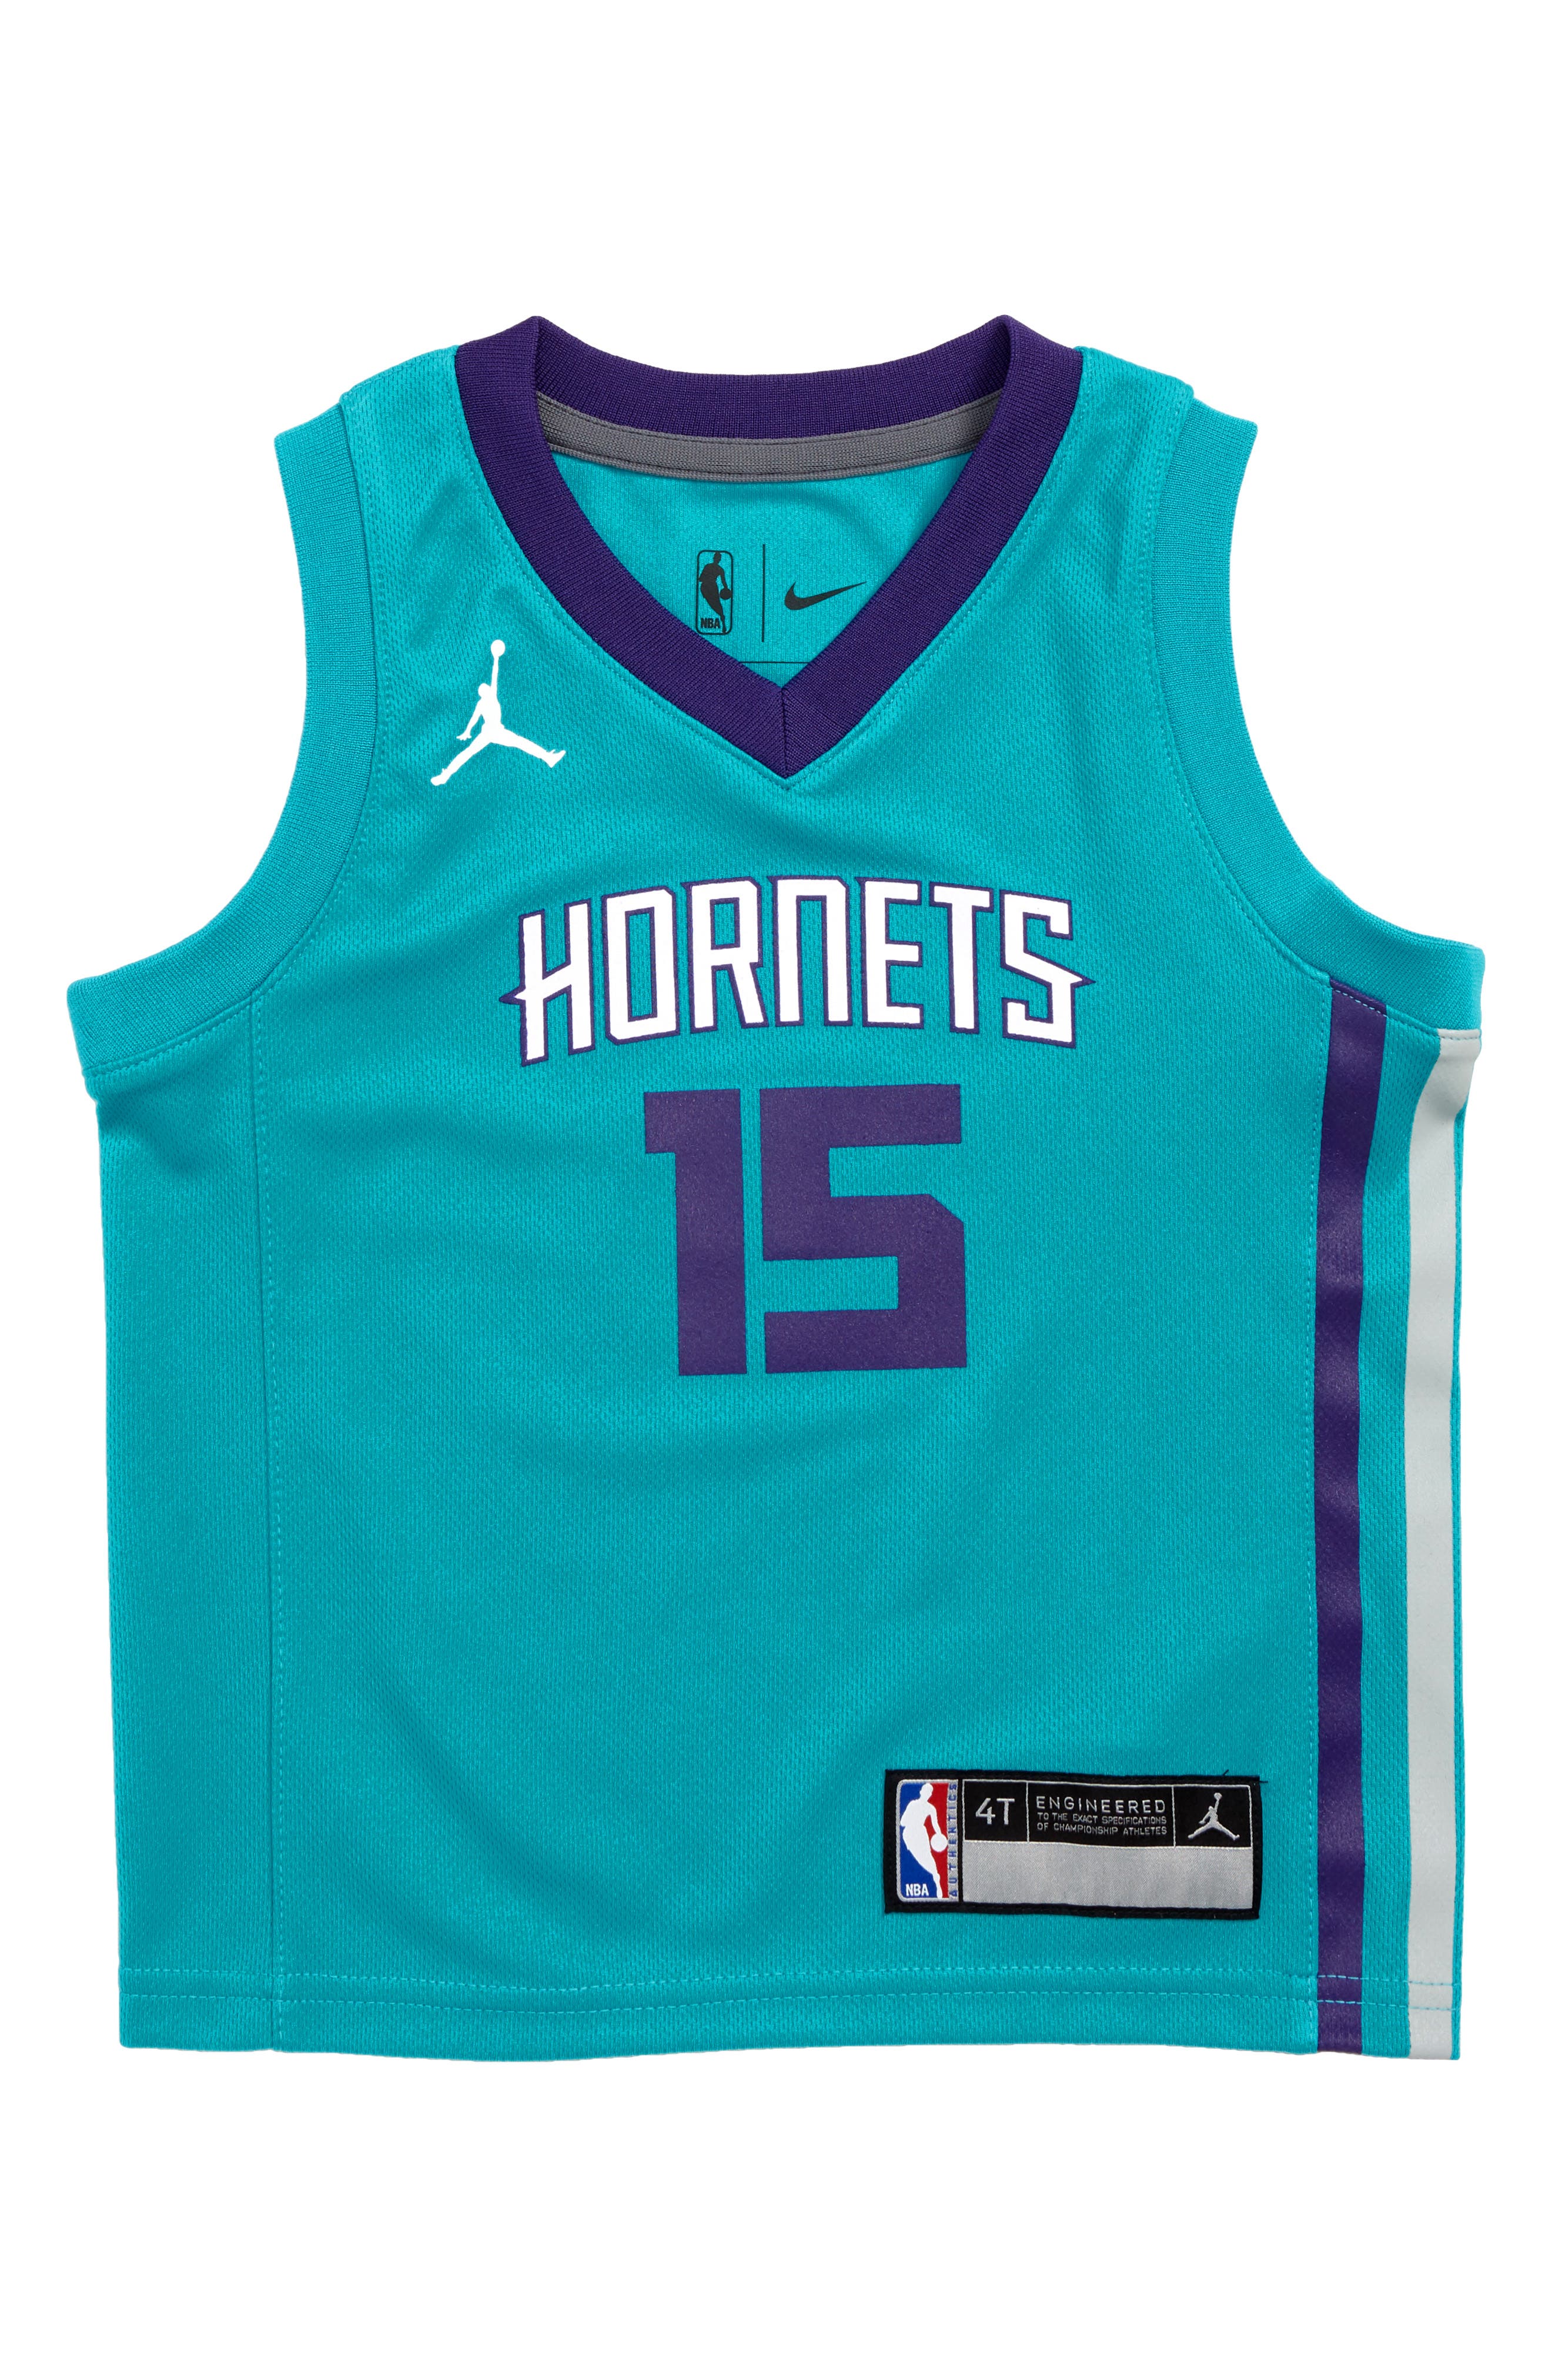 hornets basketball jersey